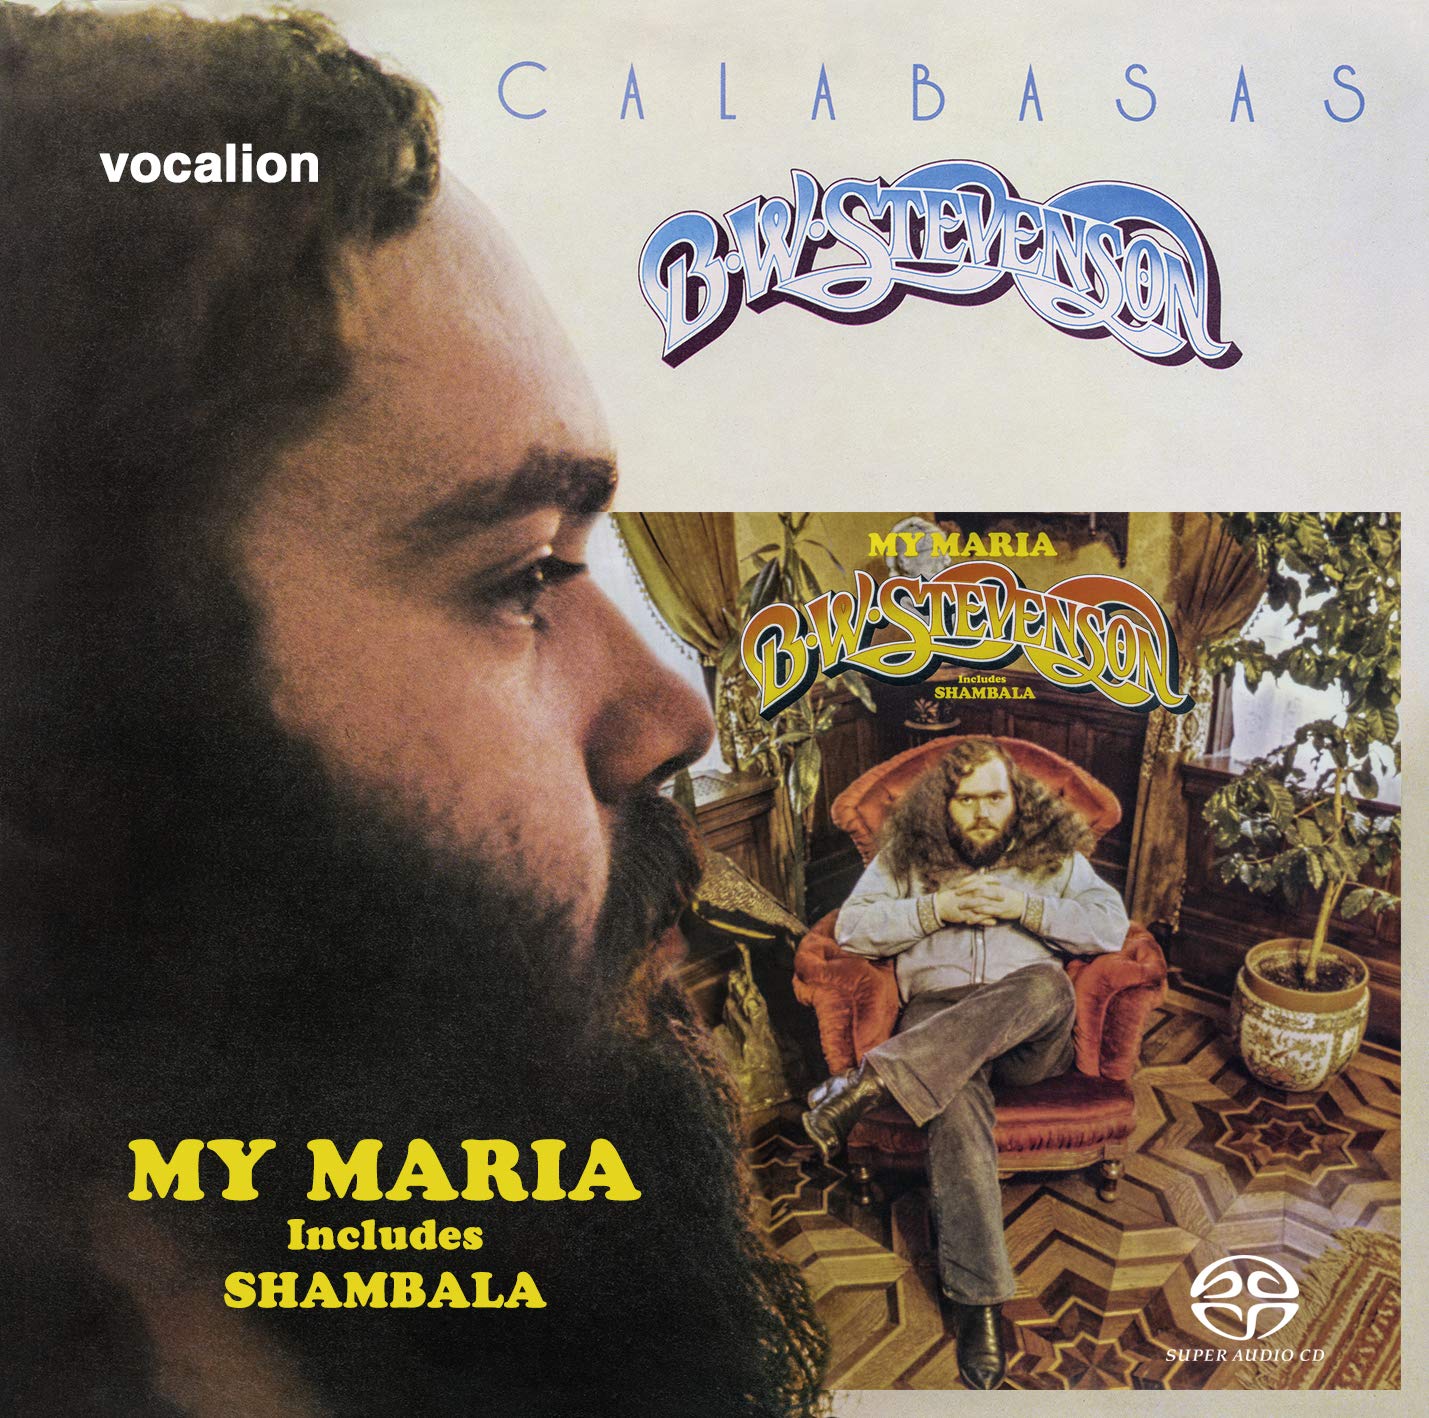 B.W. Stevenson – My Maria & Calabasas (1973 & 1974) [Reissue 2019] MCH SACD ISO + FLAC 24bit/96kHz